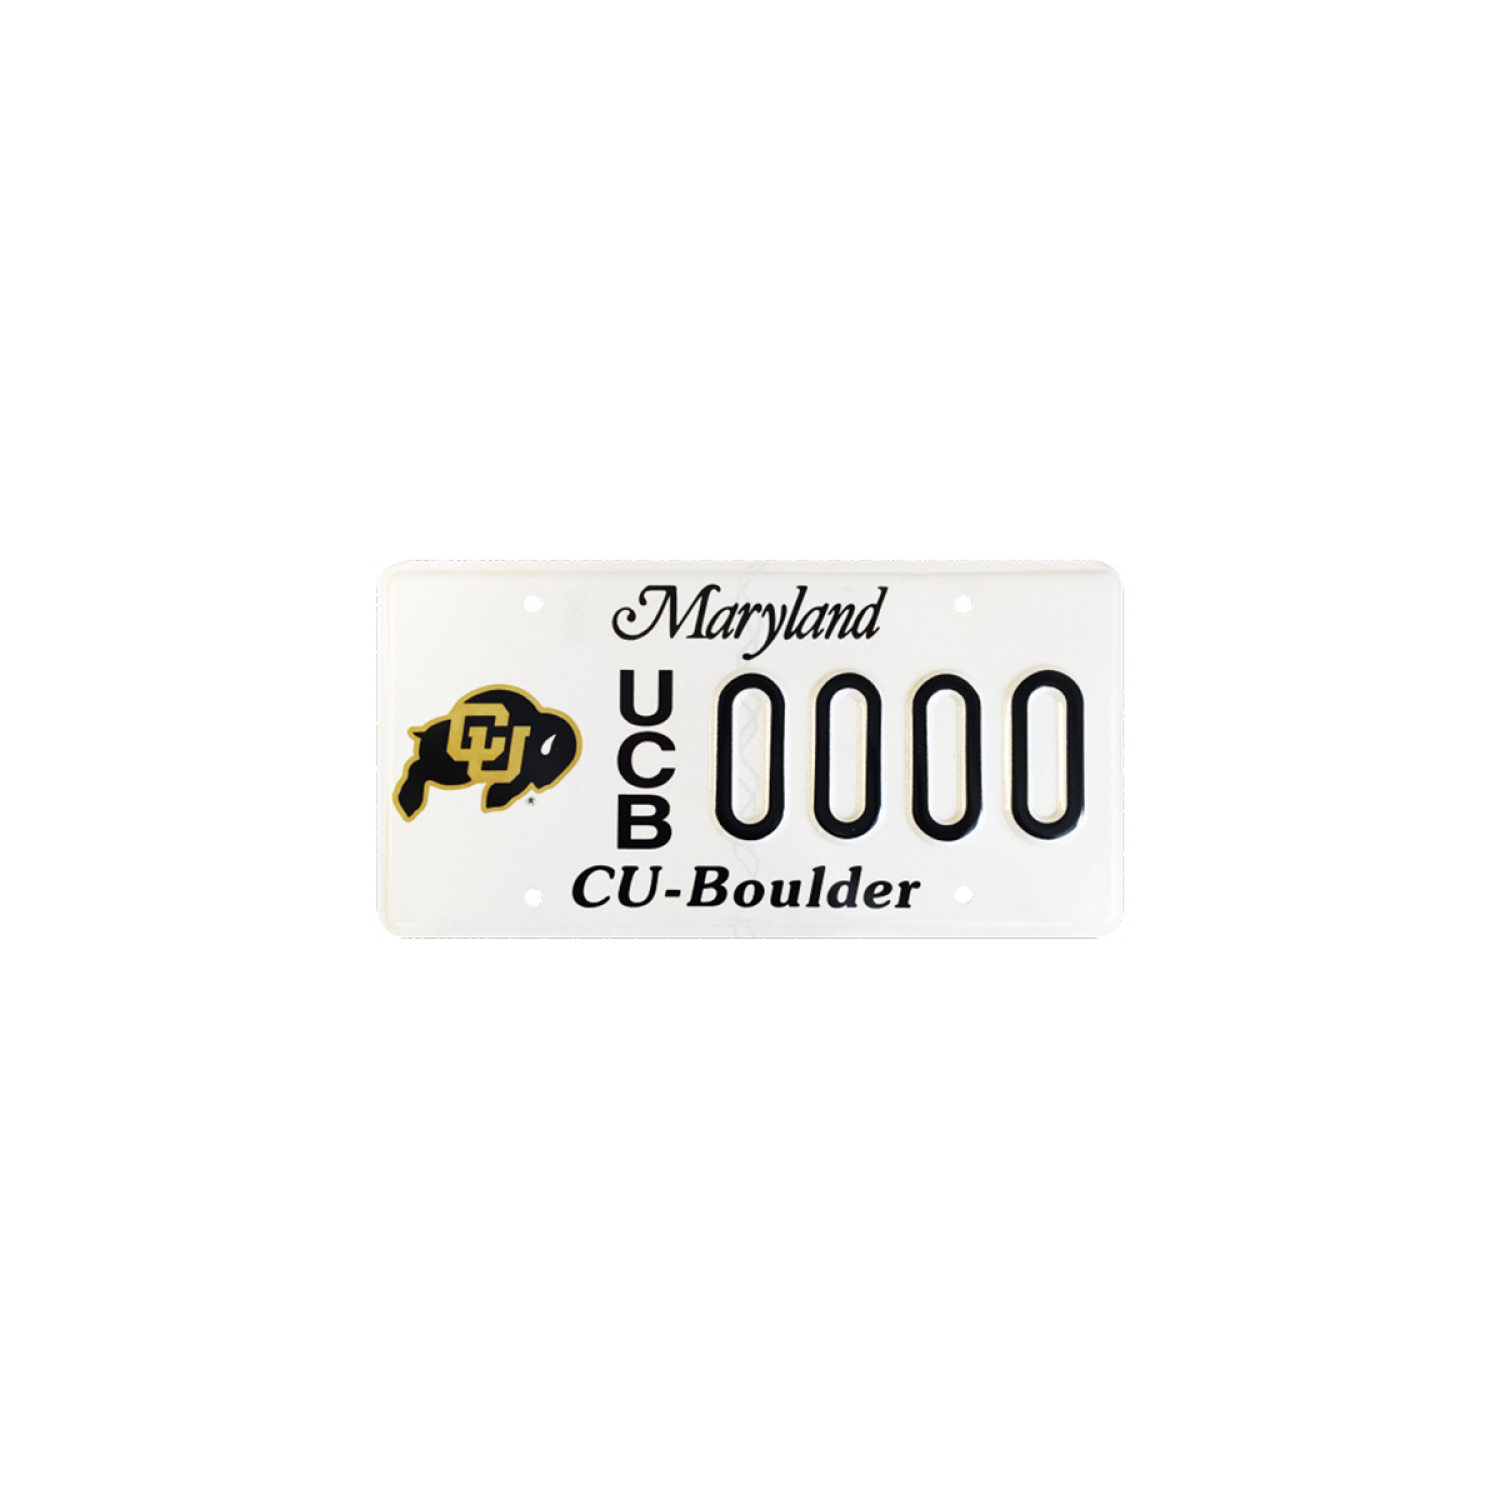 CU Boulder Maryland license plate